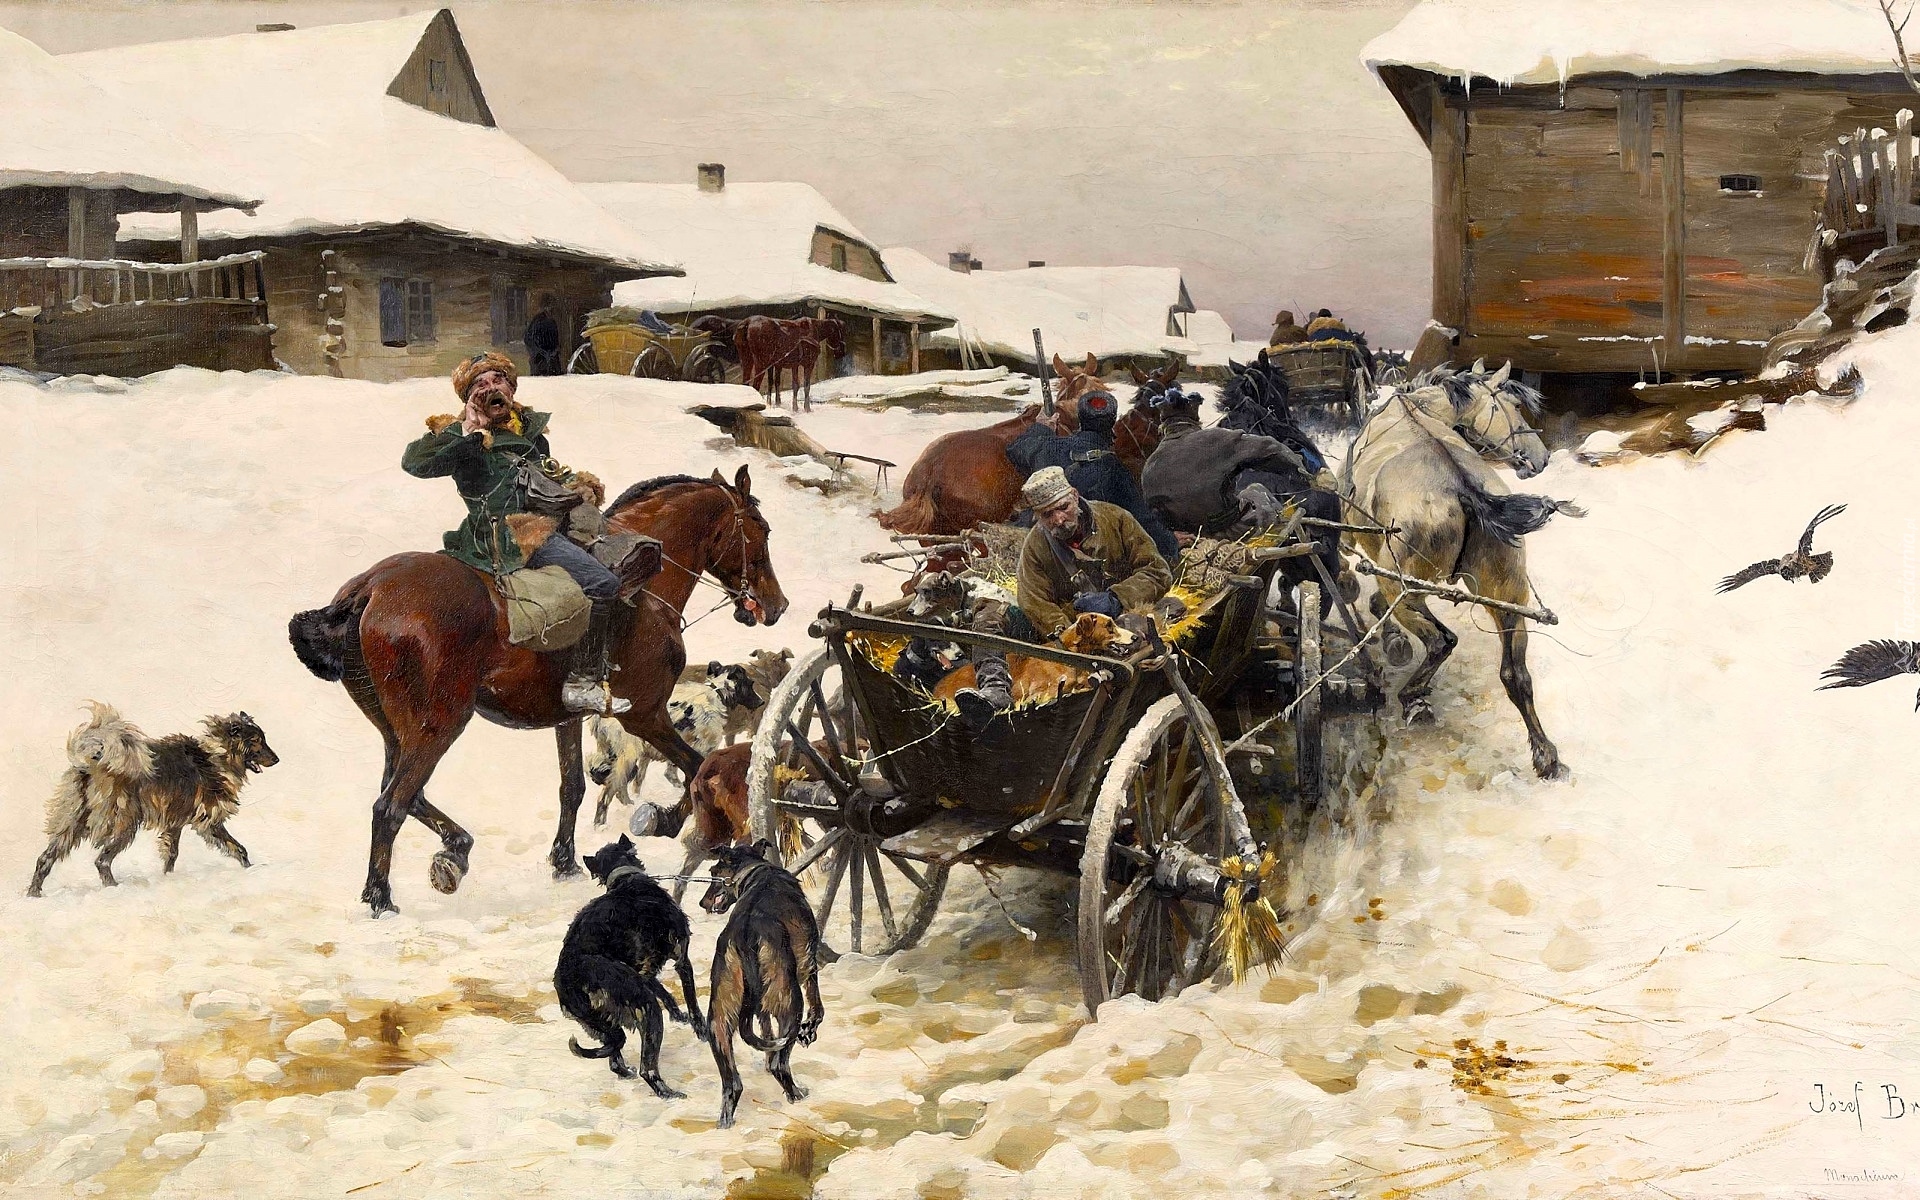 Malarstwo, Obraz, Józef Brandt, Zima, Śnieg, Zaprzęg konny, Konie, Psy, Domy